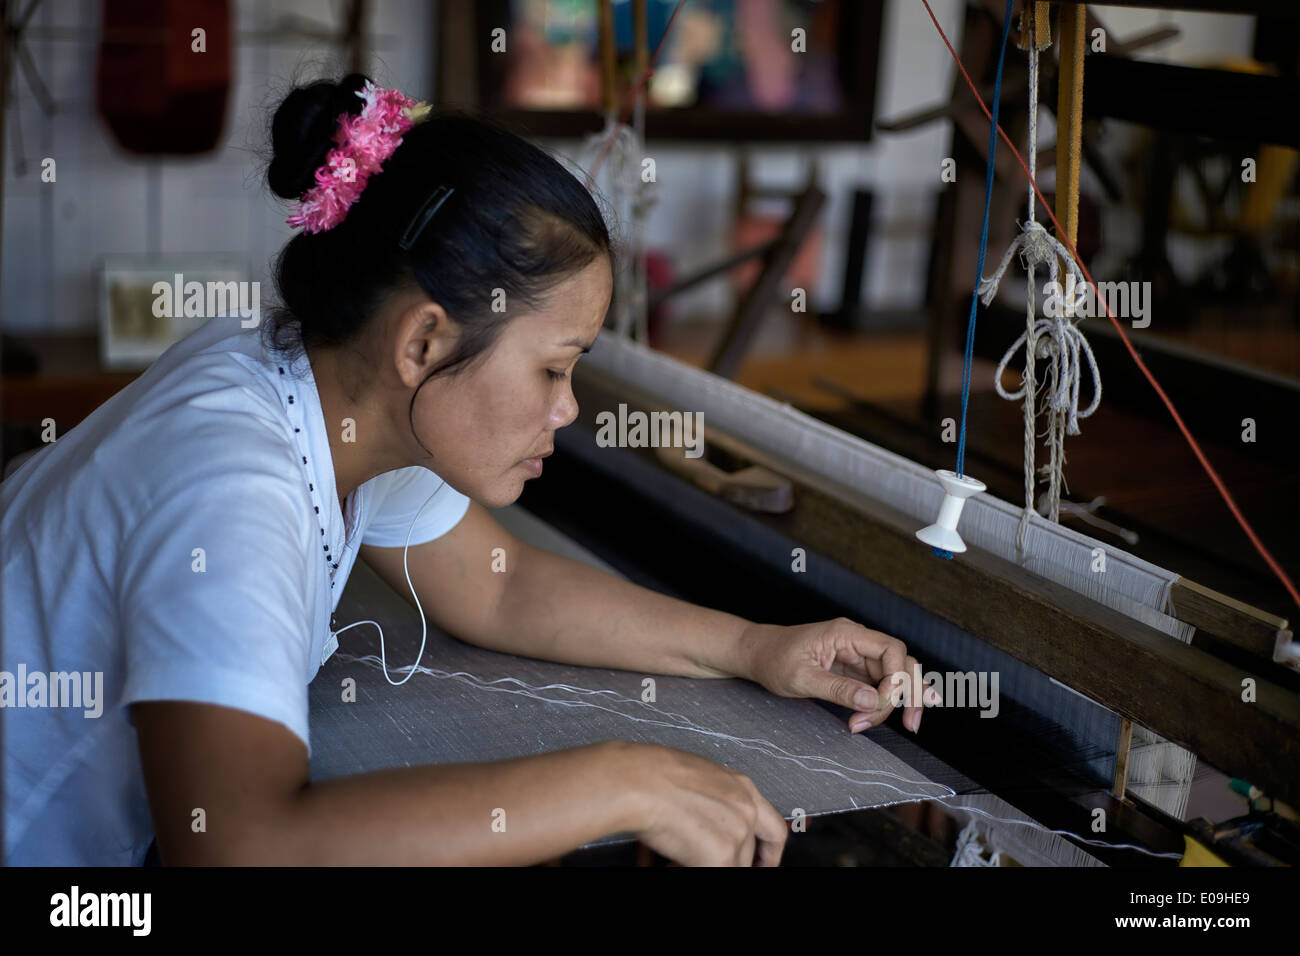 Femme thaïlandaise travaillant sur un métier à tisser traditionnel en bois production de soie tissée de vêtements. S. E. Asie Thaïlande Banque D'Images